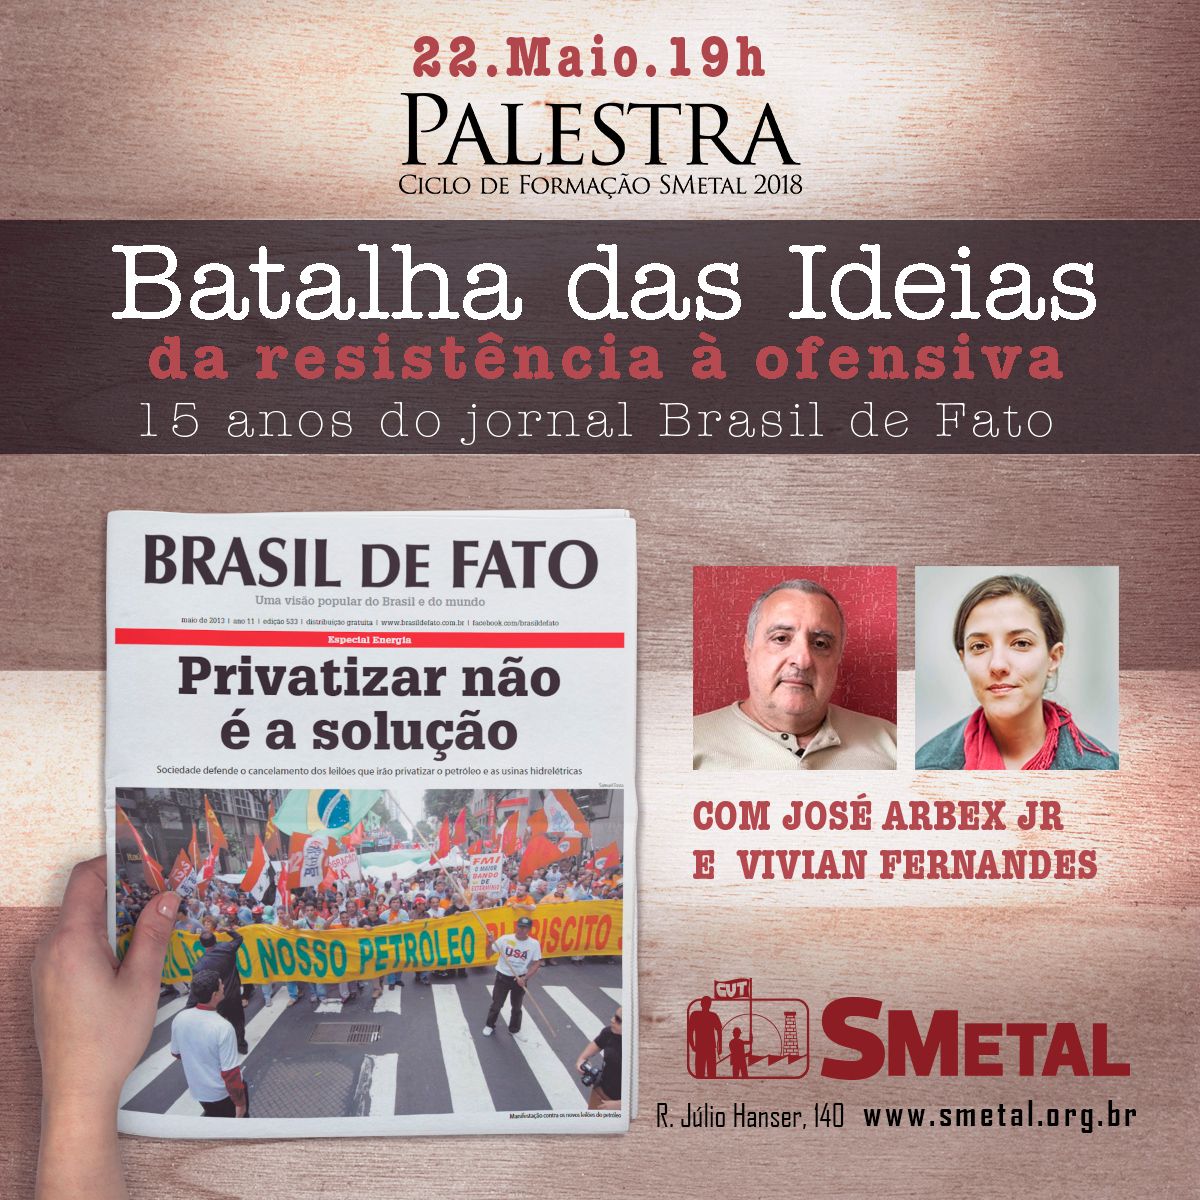 O evento, que é aberto ao público em geral e gratuito, comemora os 15 anos do jornal Brasil de Fato (BdF)